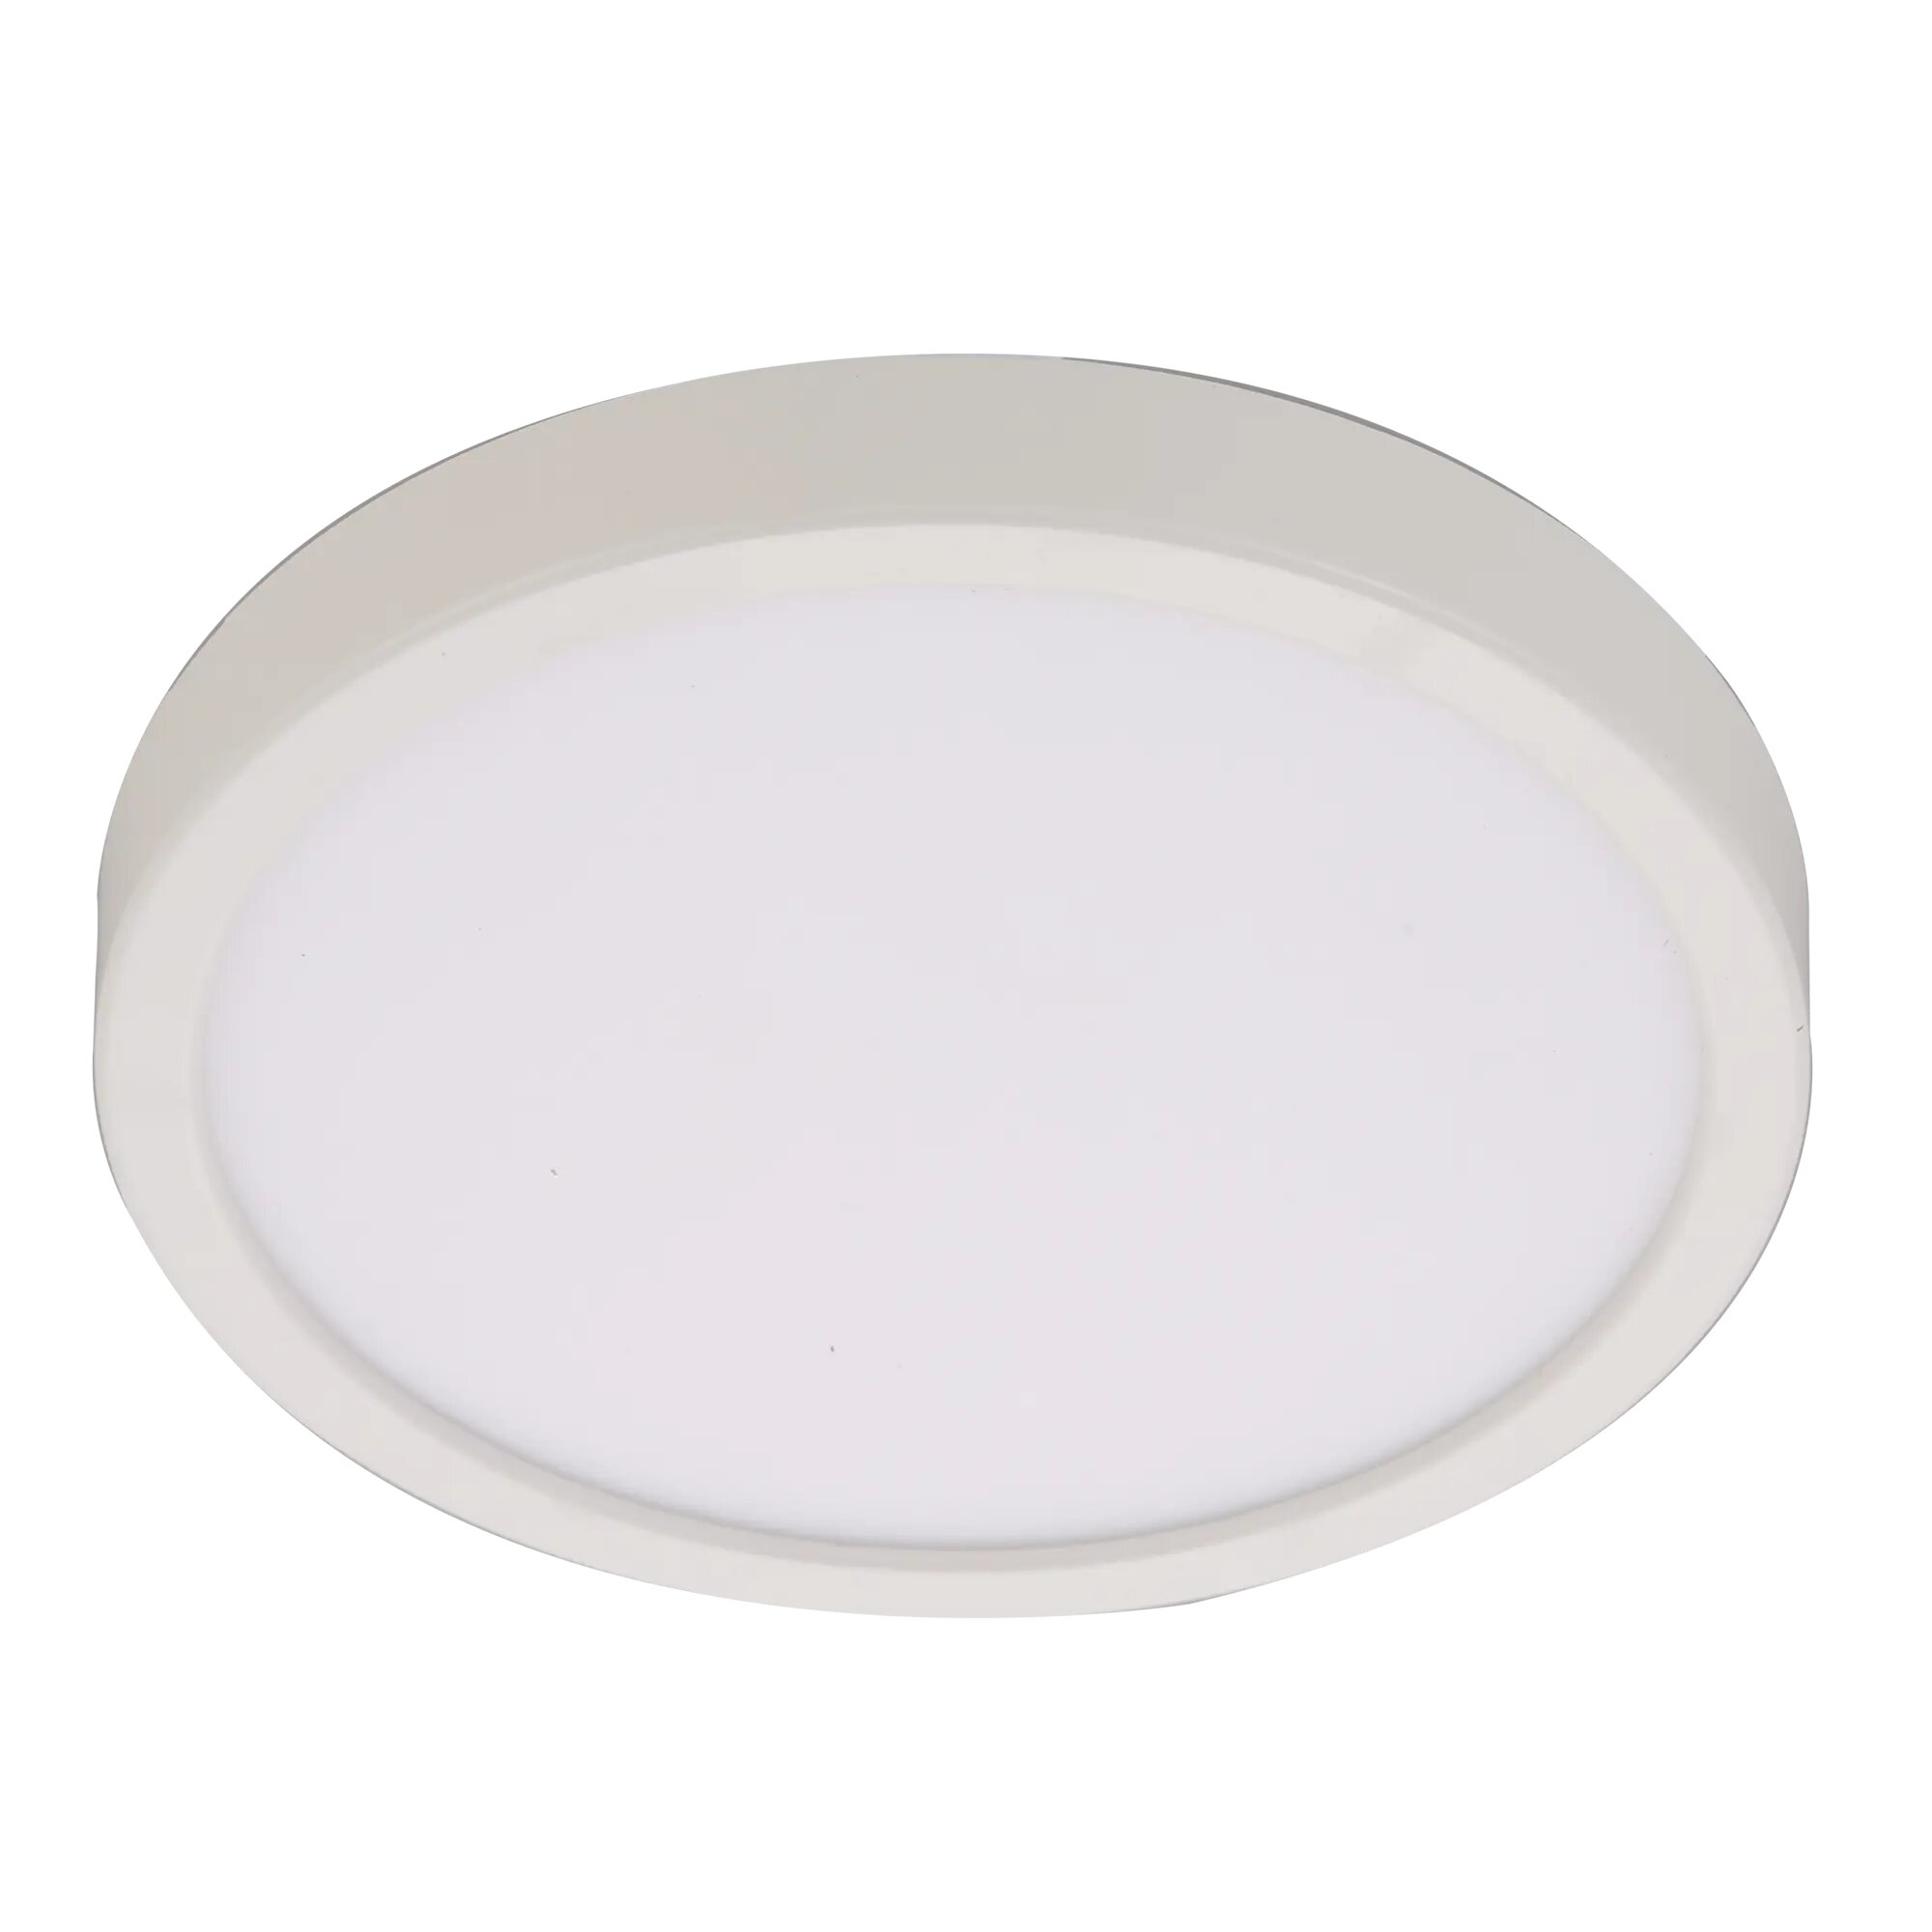 Спот светодиодный накладной влагозащищенный Inspire Sanoa M 7 м² регулируемый белый свет цвет белый